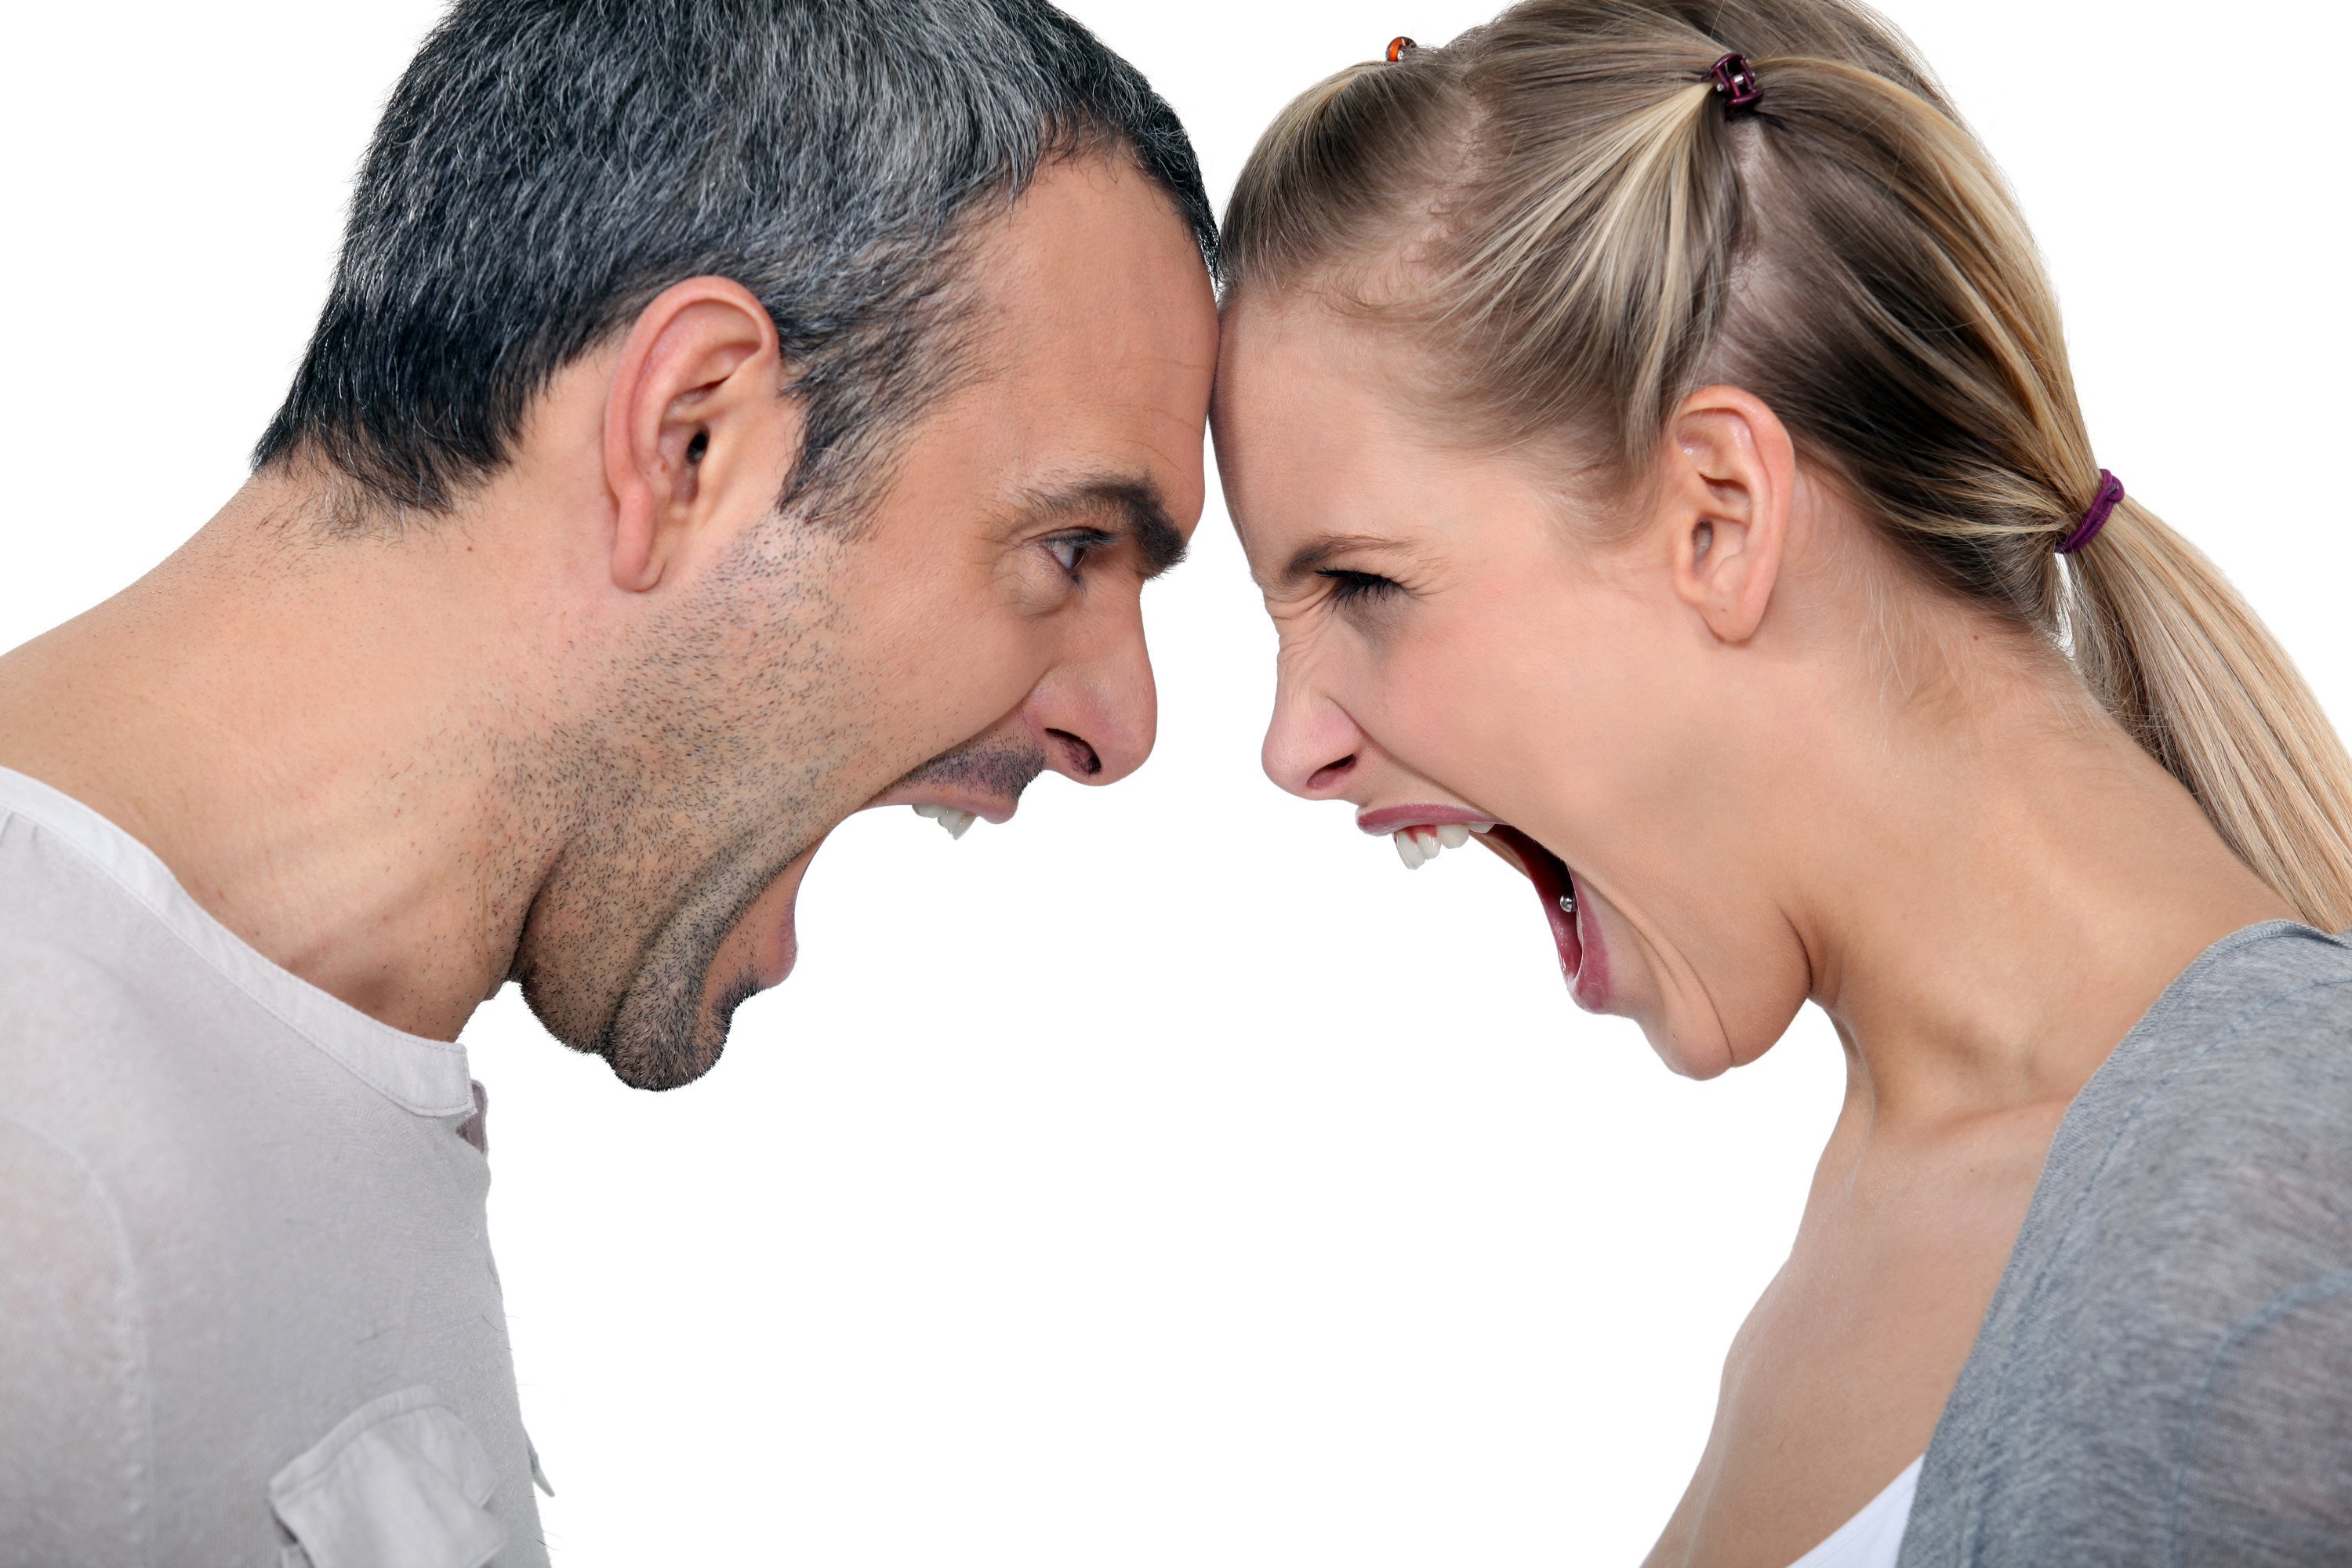 Супруги второго года. Конфликт между мужчиной и женщиной. Спор между мужчиной и женщиной. Взаимоотношения мужчины и женщины. Супружеские конфликты.